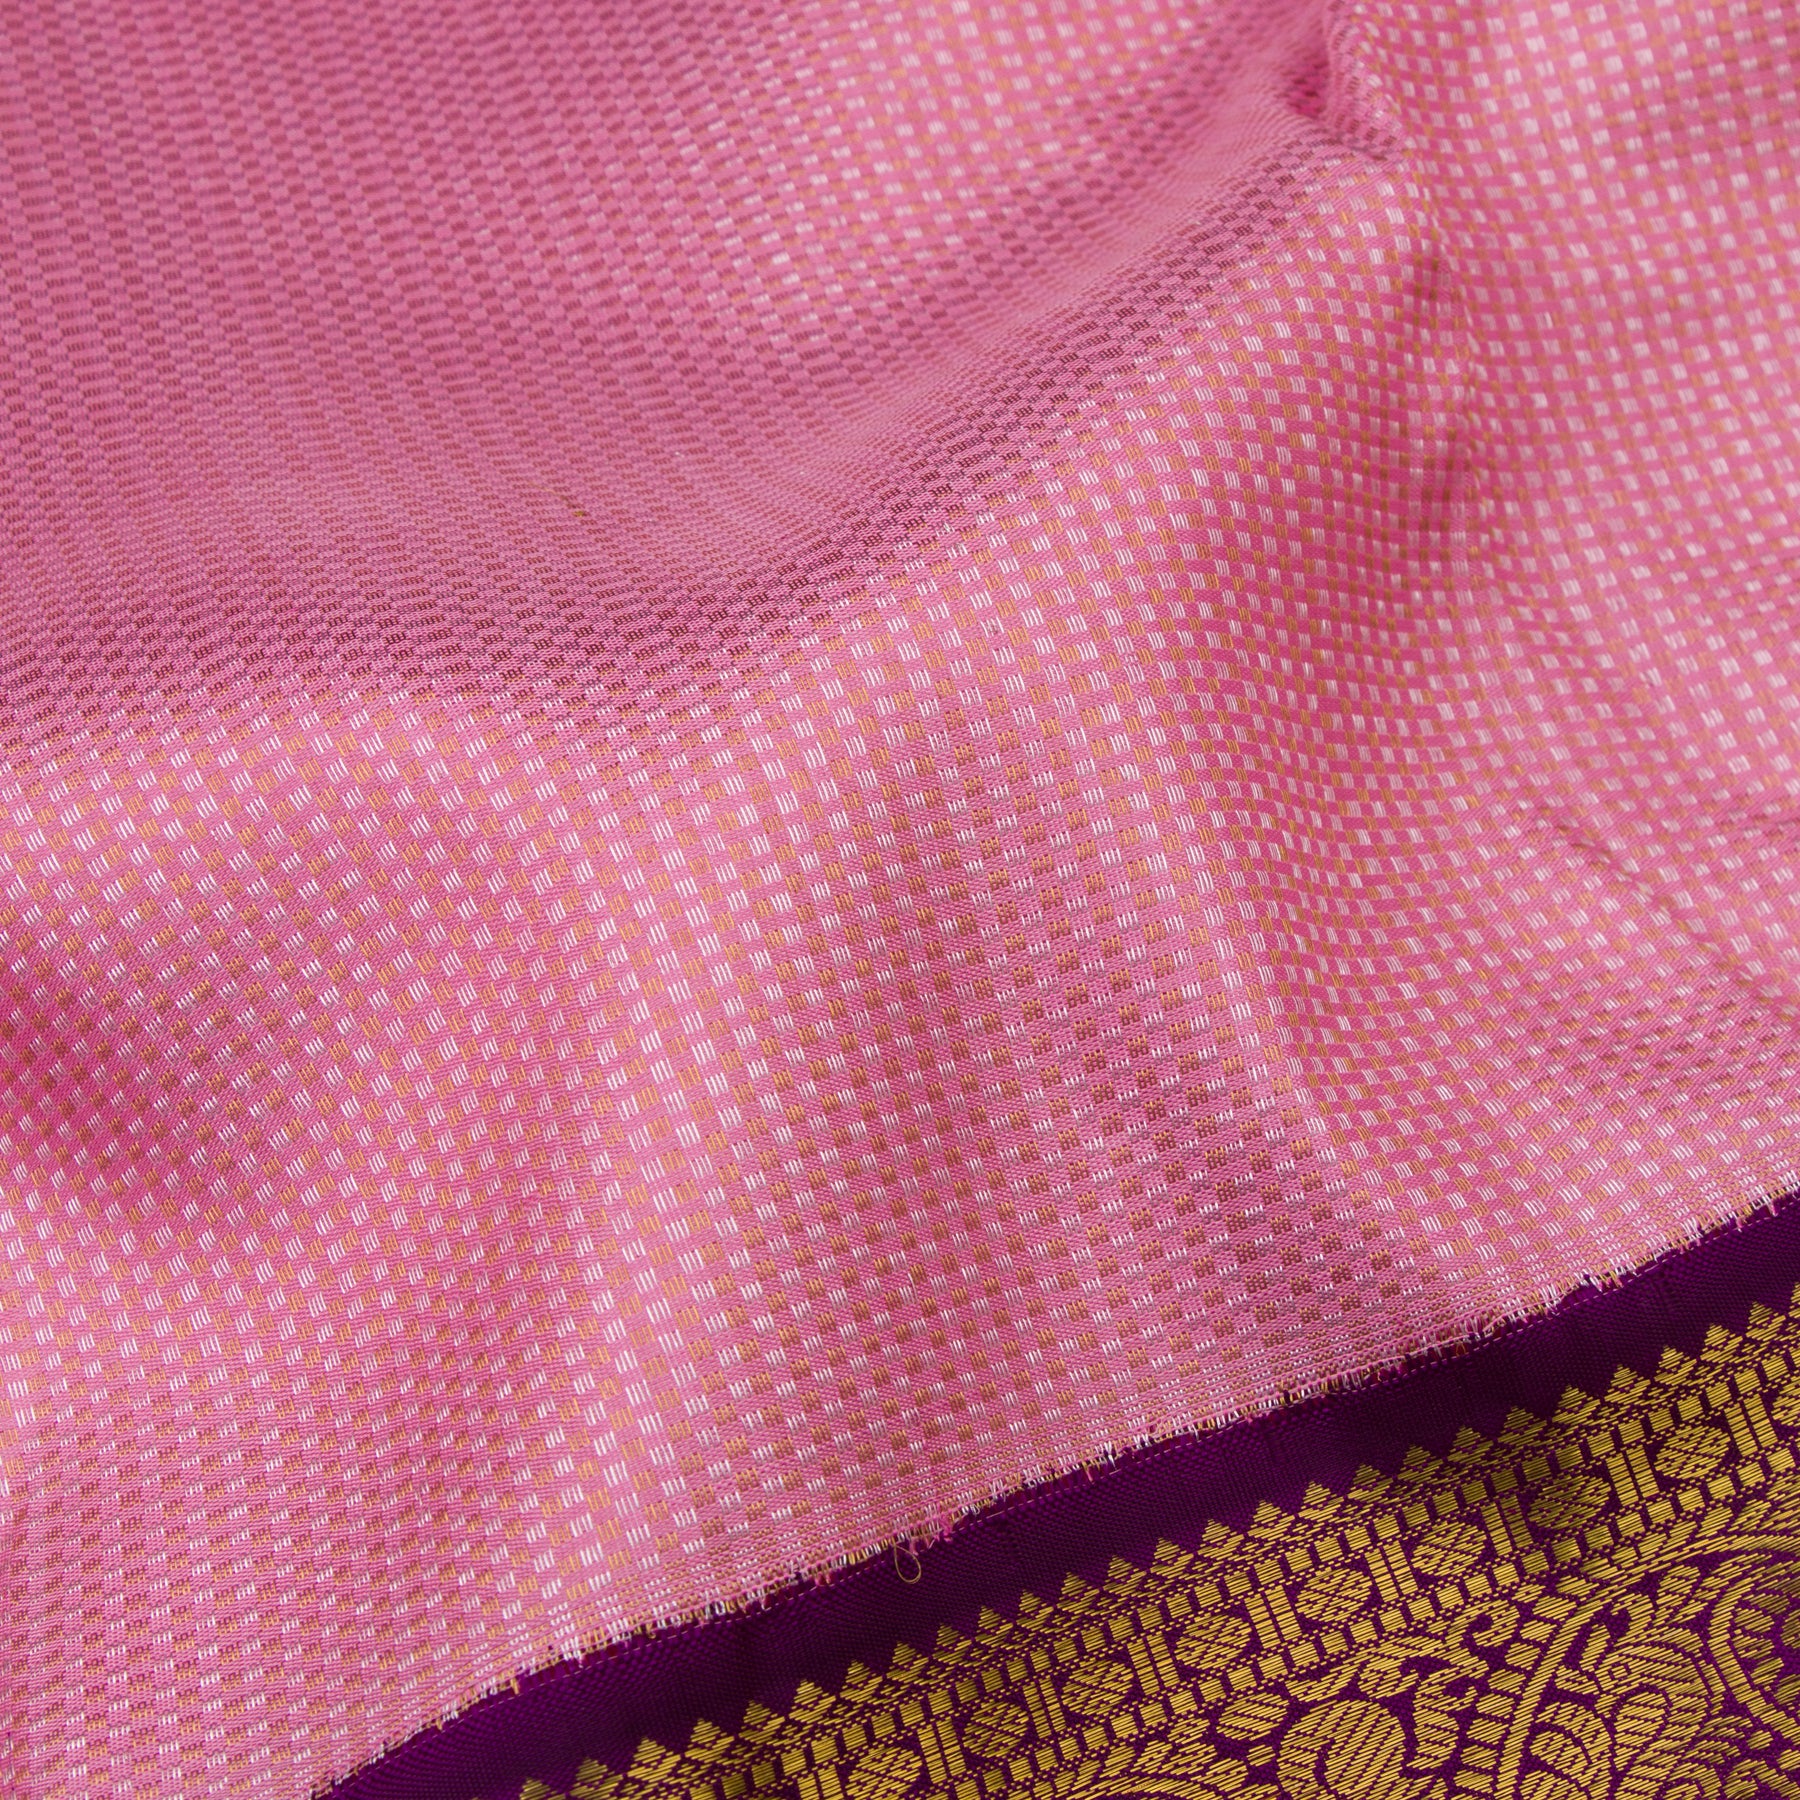 Kanakavalli Kanjivaram Silk Sari 23-110-HS001-00074 - Fabric View